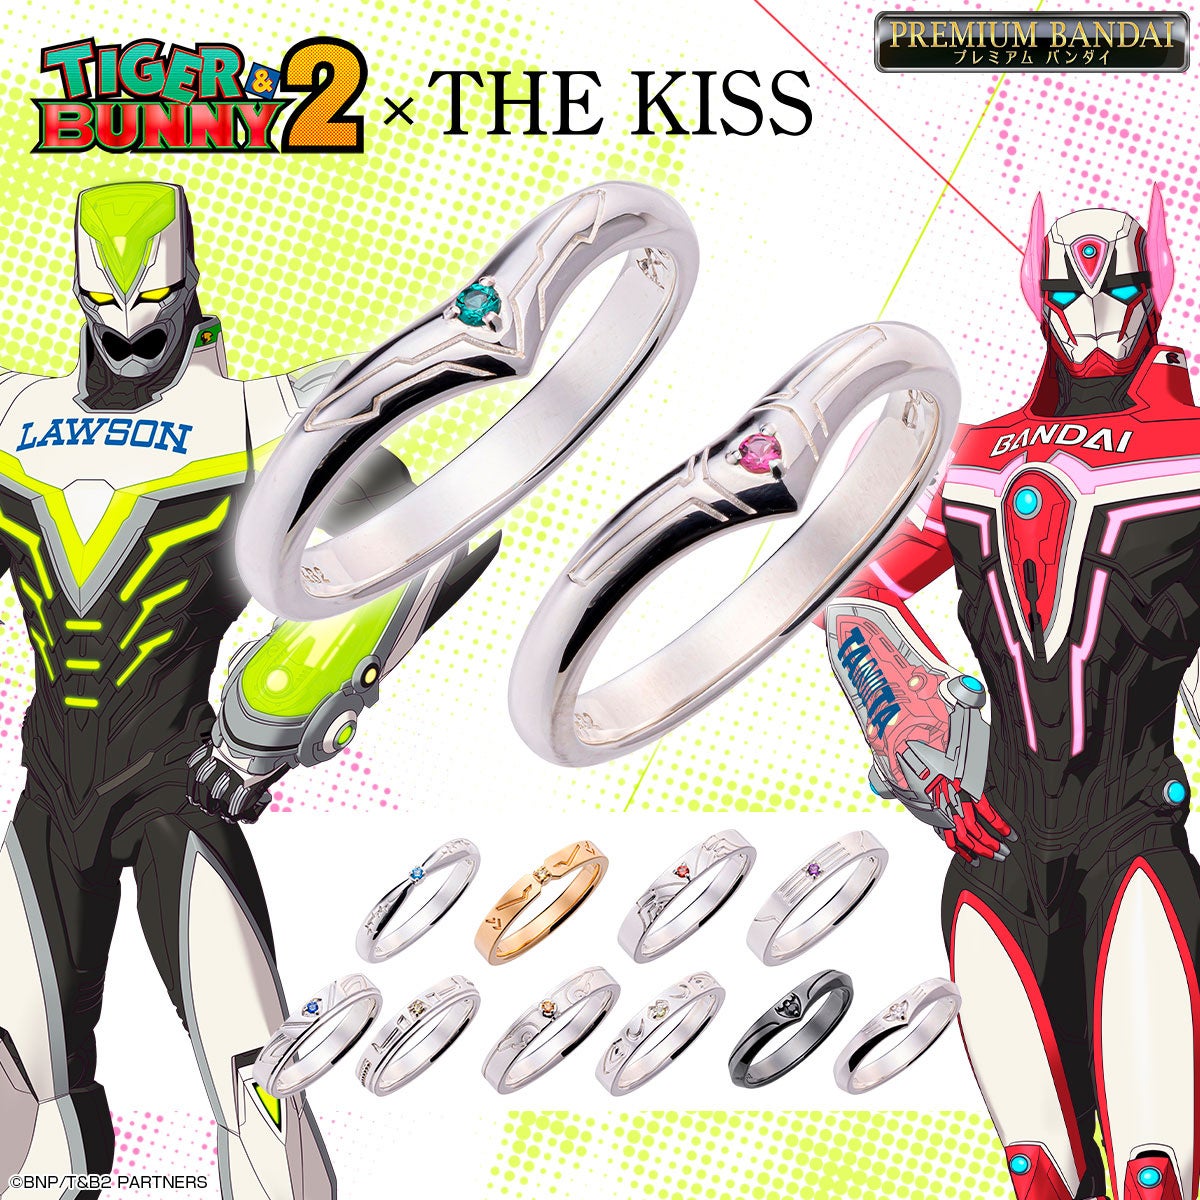 TIGER & BUNNY 2×THE KISSコラボレーションのバディをイメージしたシルバーリング12種が登場！